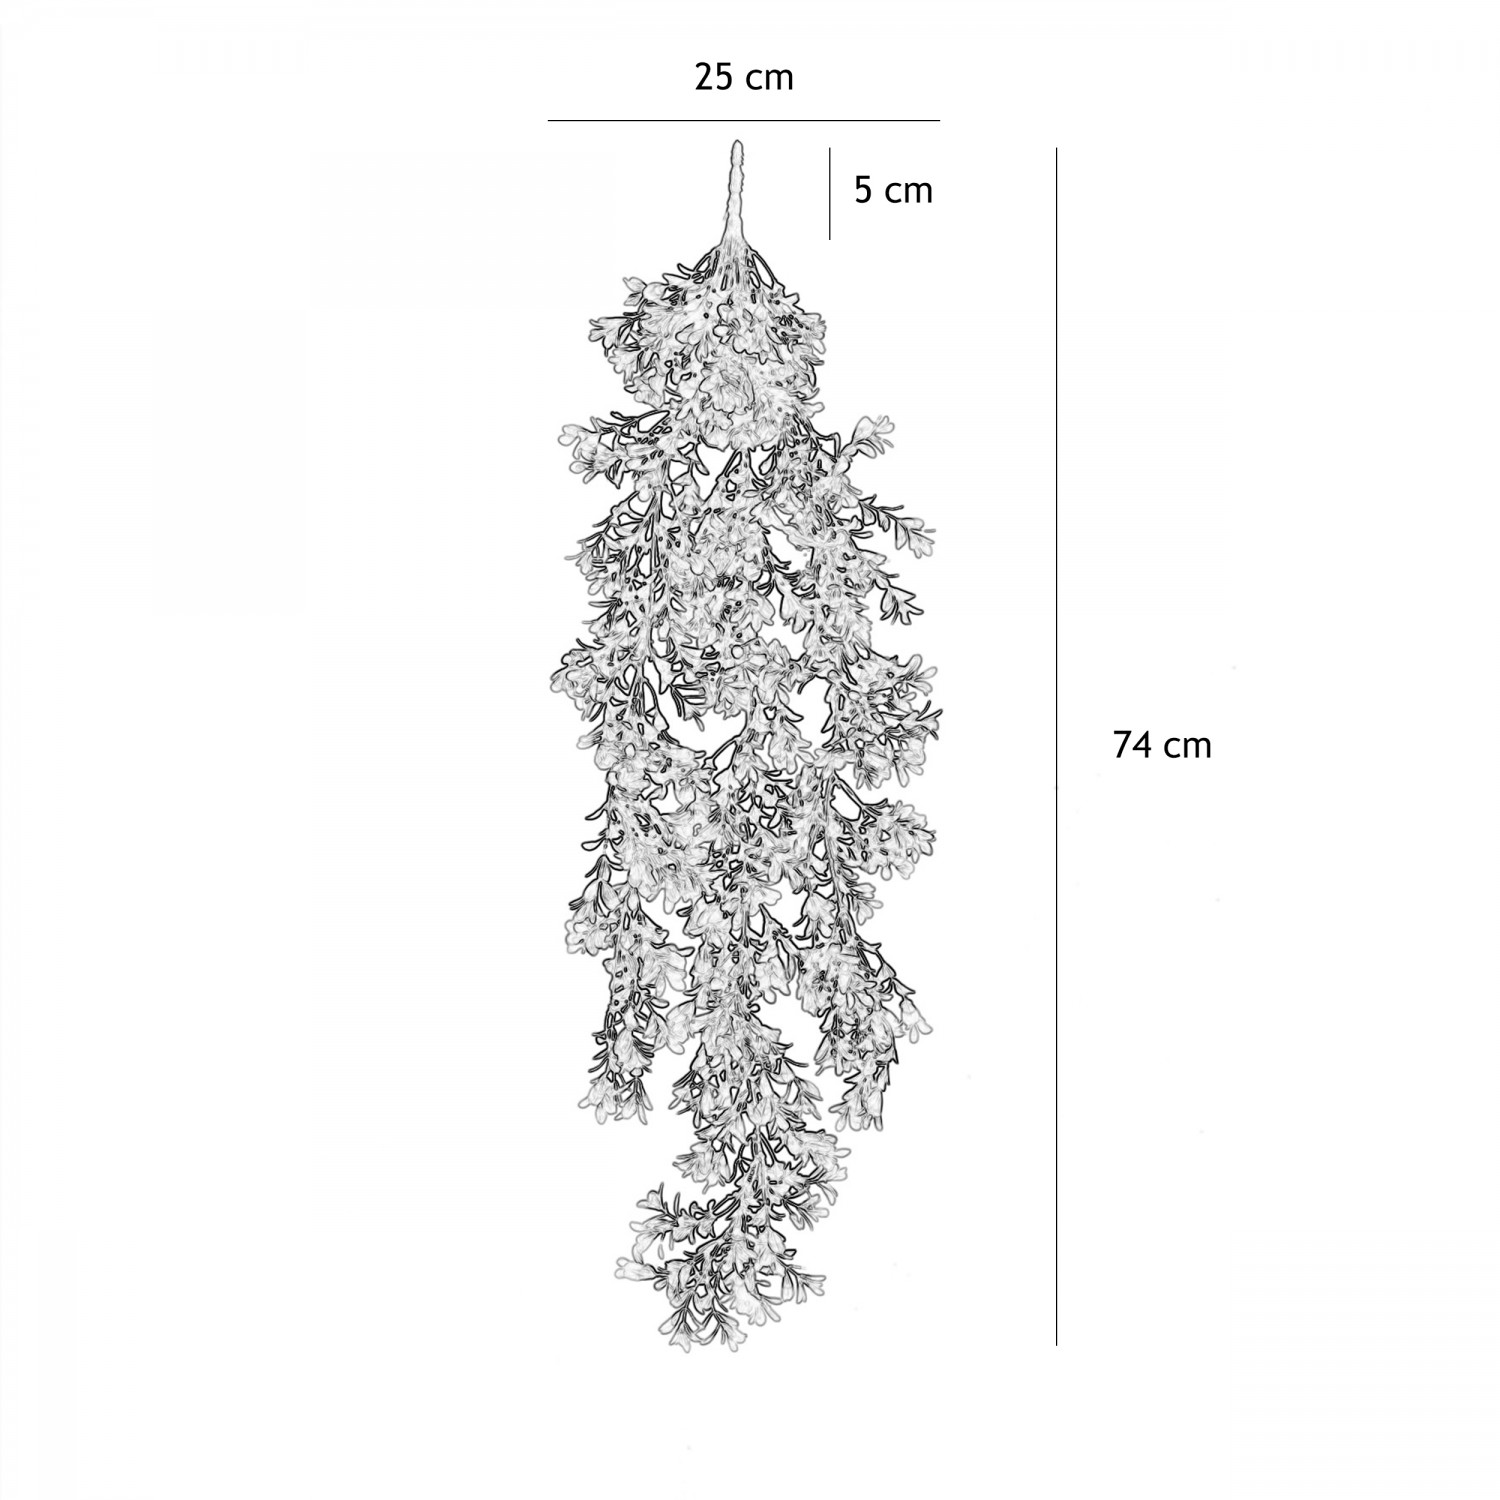 Chute plante artificielle de buis 74cm lot de 2 graphique avec les dimensions